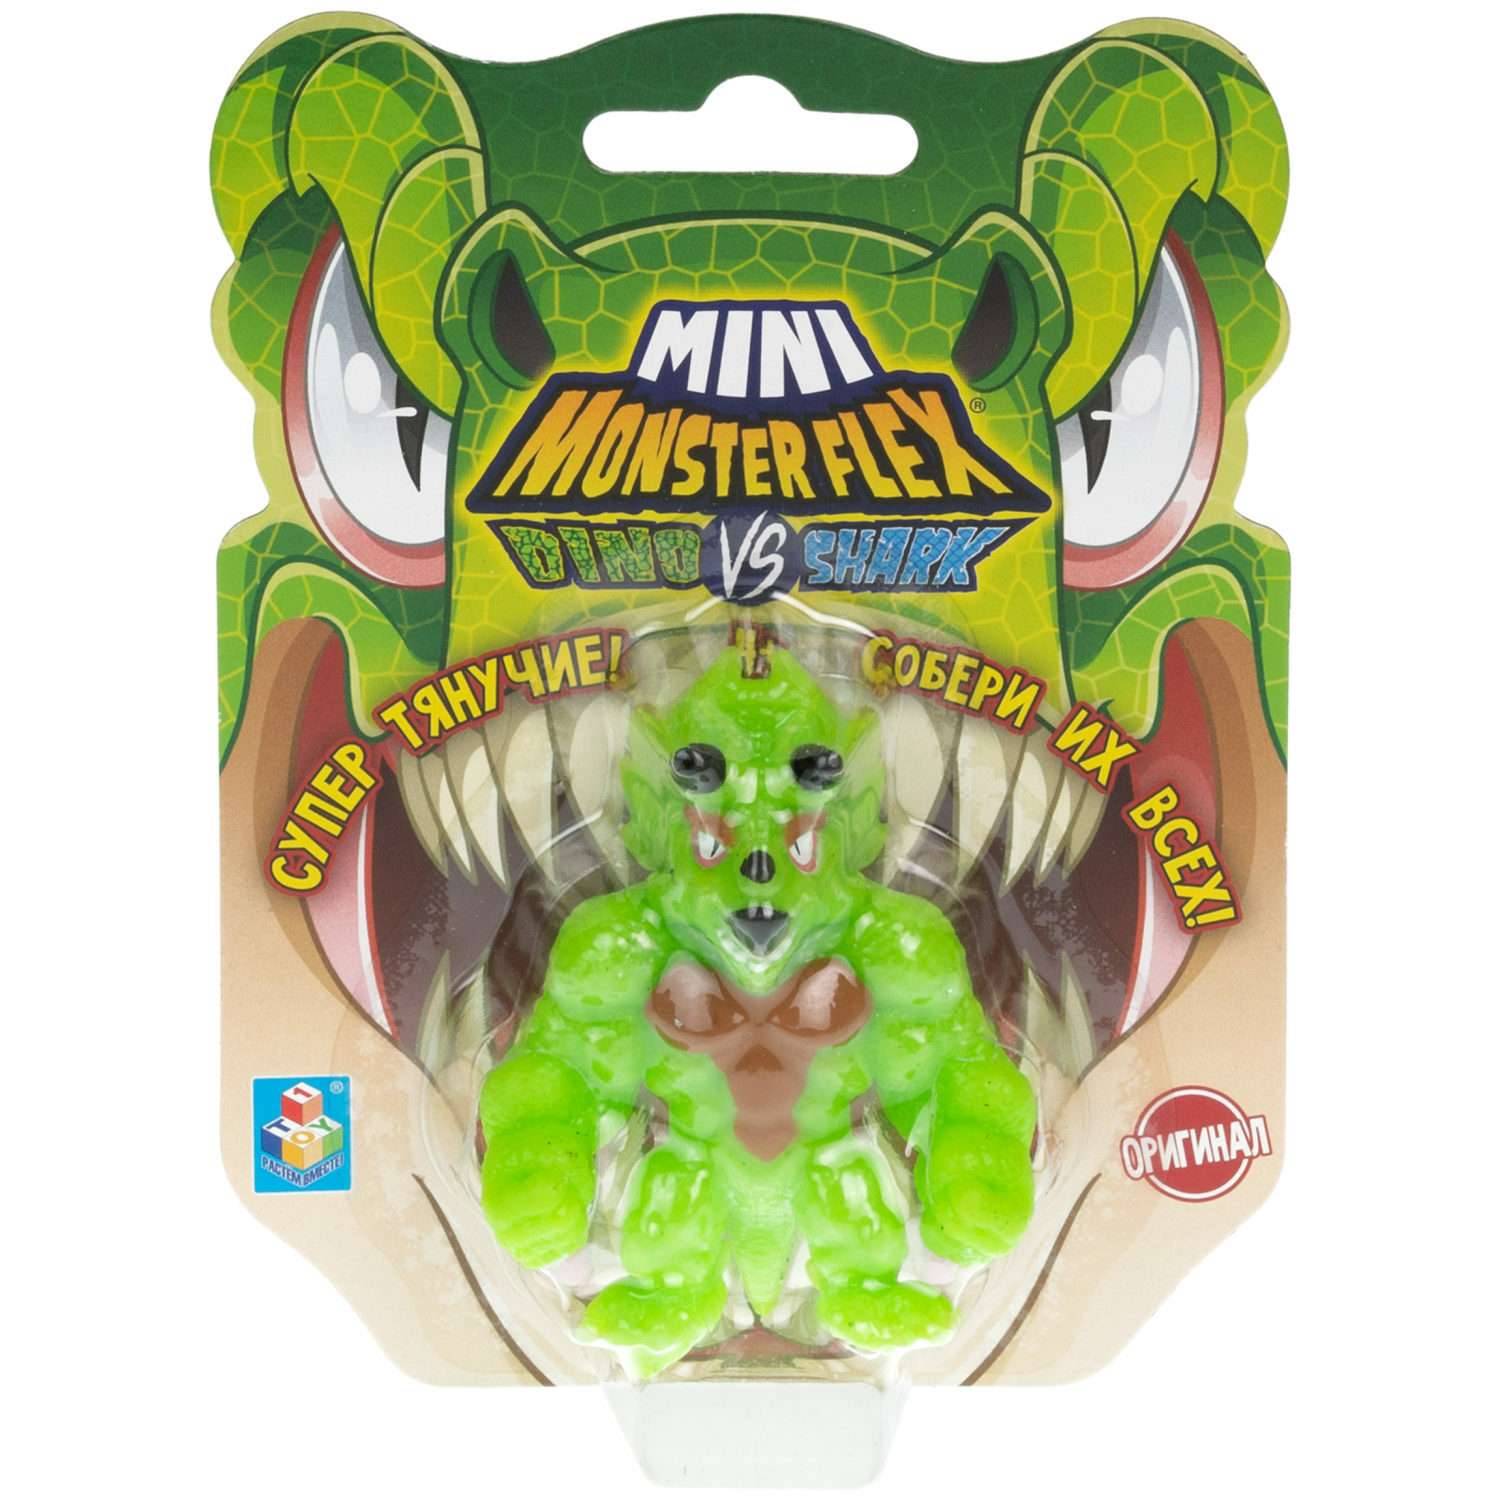 Игрушка-антистресс Monster flex mini dino и shark Трицерокс 7см - фото 6